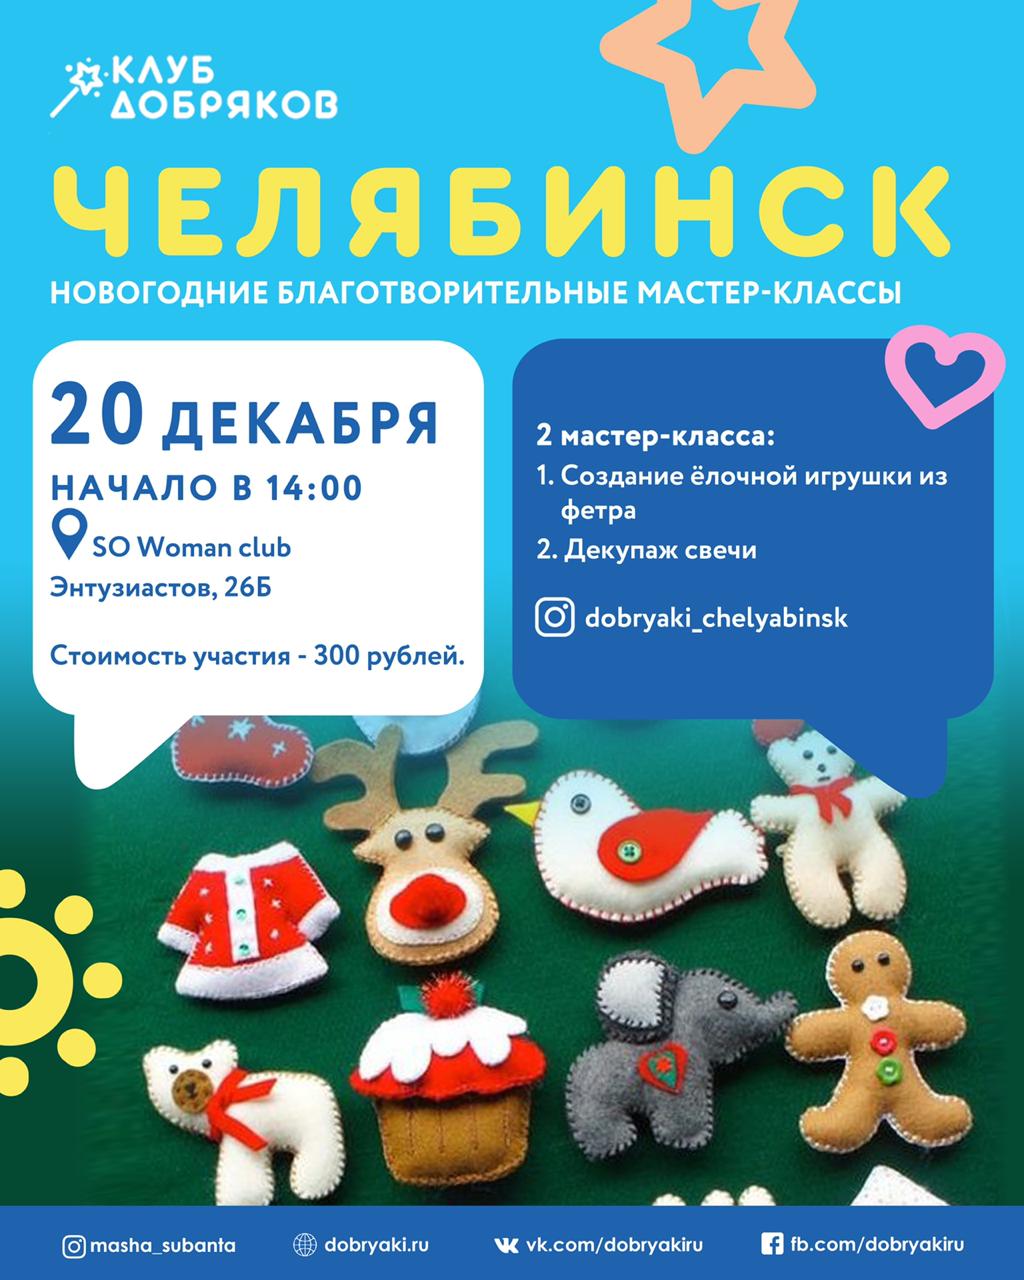 Новогодние благотворительные мастер-классы в Челябинске